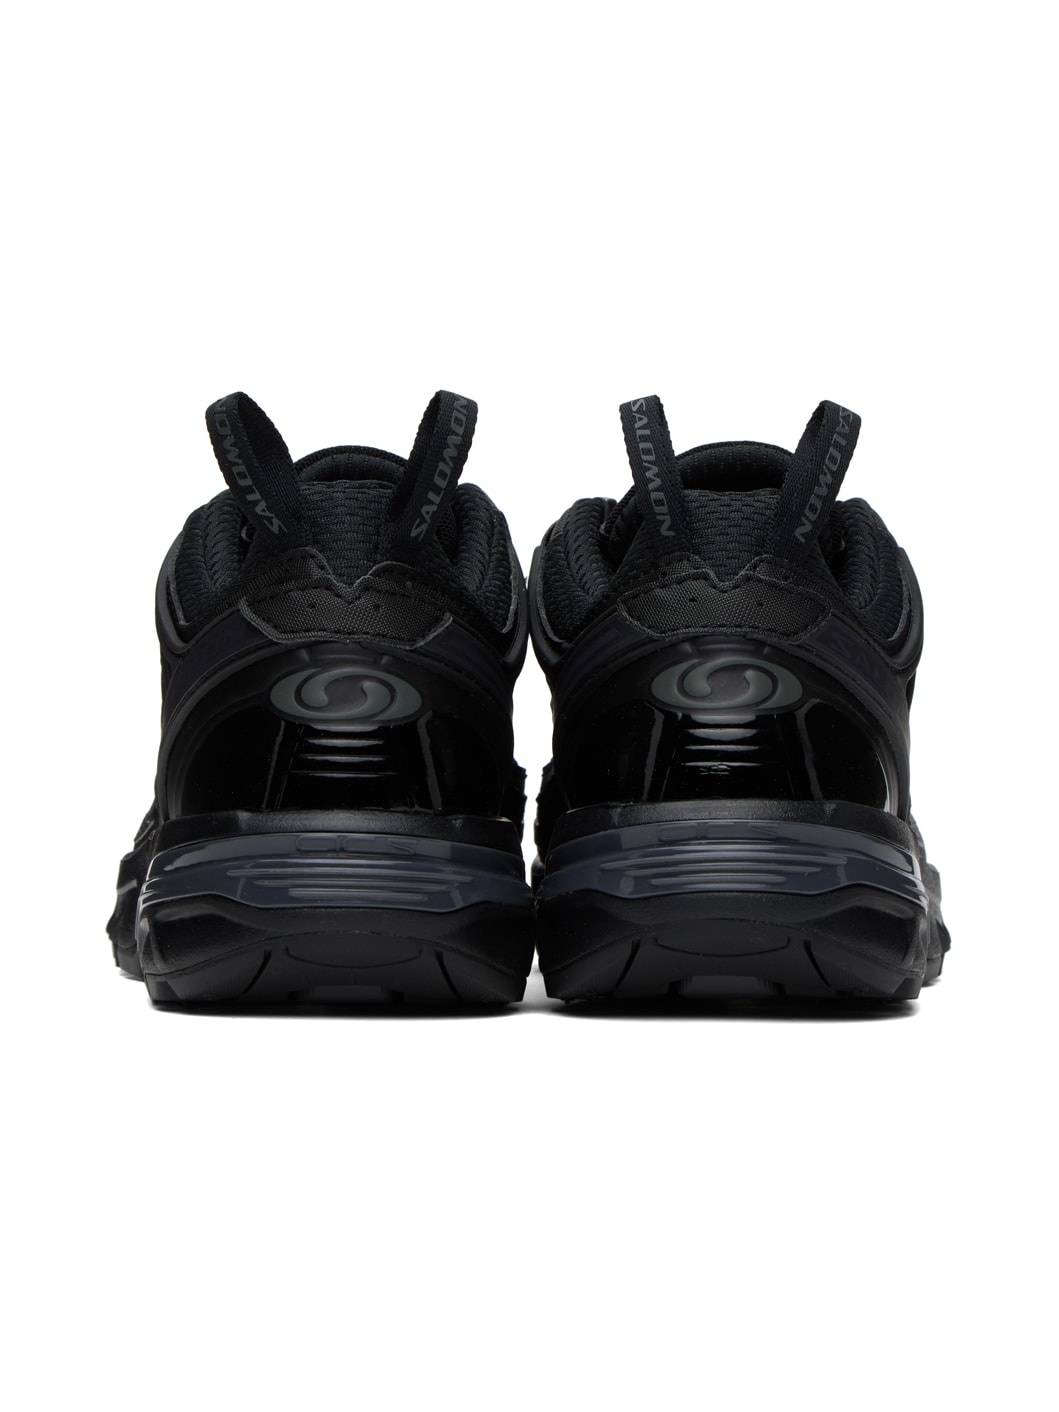 Black ACS Pro Sneakers - 2